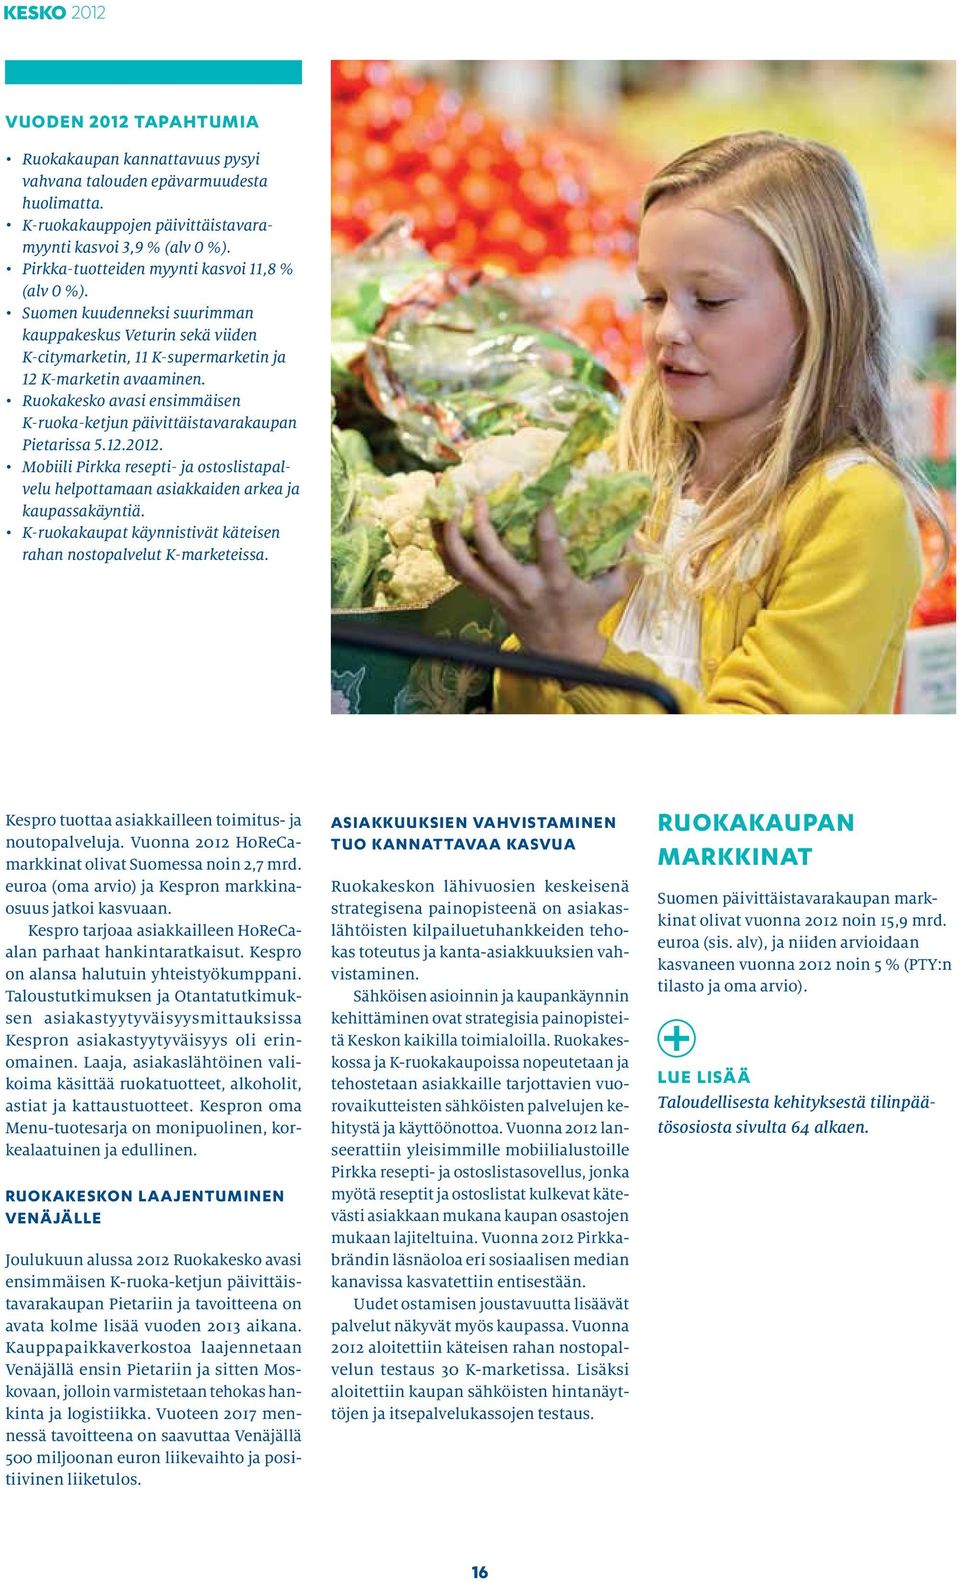 Ruokakesko avasi ensimmäisen K-ruoka-ketjun päivittäistavarakaupan Pietarissa 5.12.2012. Mobiili Pirkka resepti- ja ostoslistapalvelu helpottamaan asiakkaiden arkea ja kaupassakäyntiä.